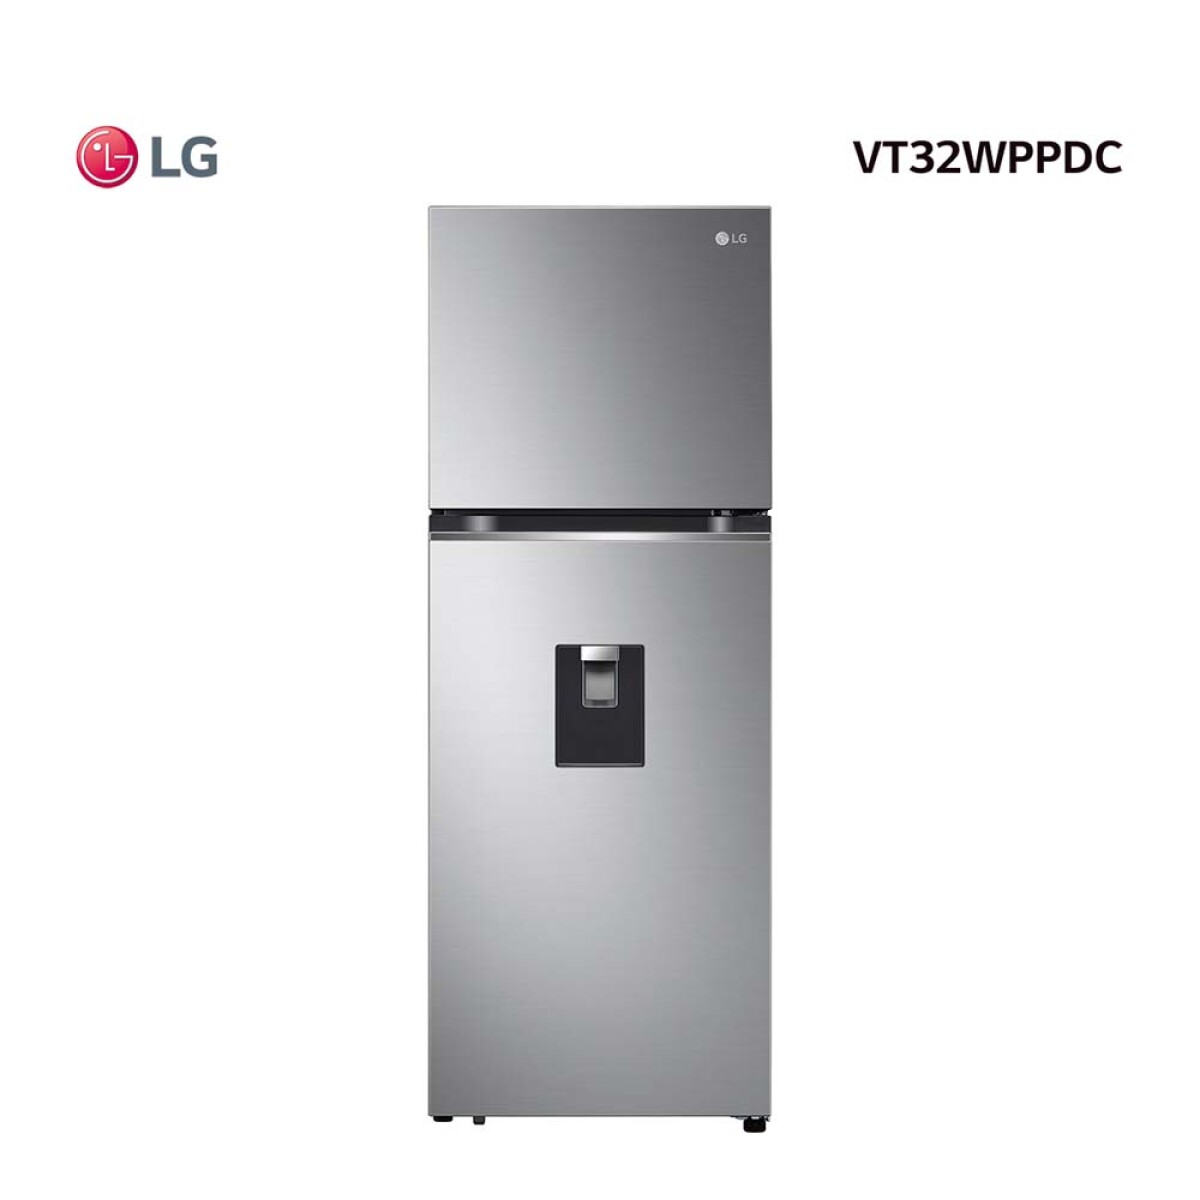 Refrigerador LG VT32WPPDC Inox Inverter - 315 L con Water Dispenser 